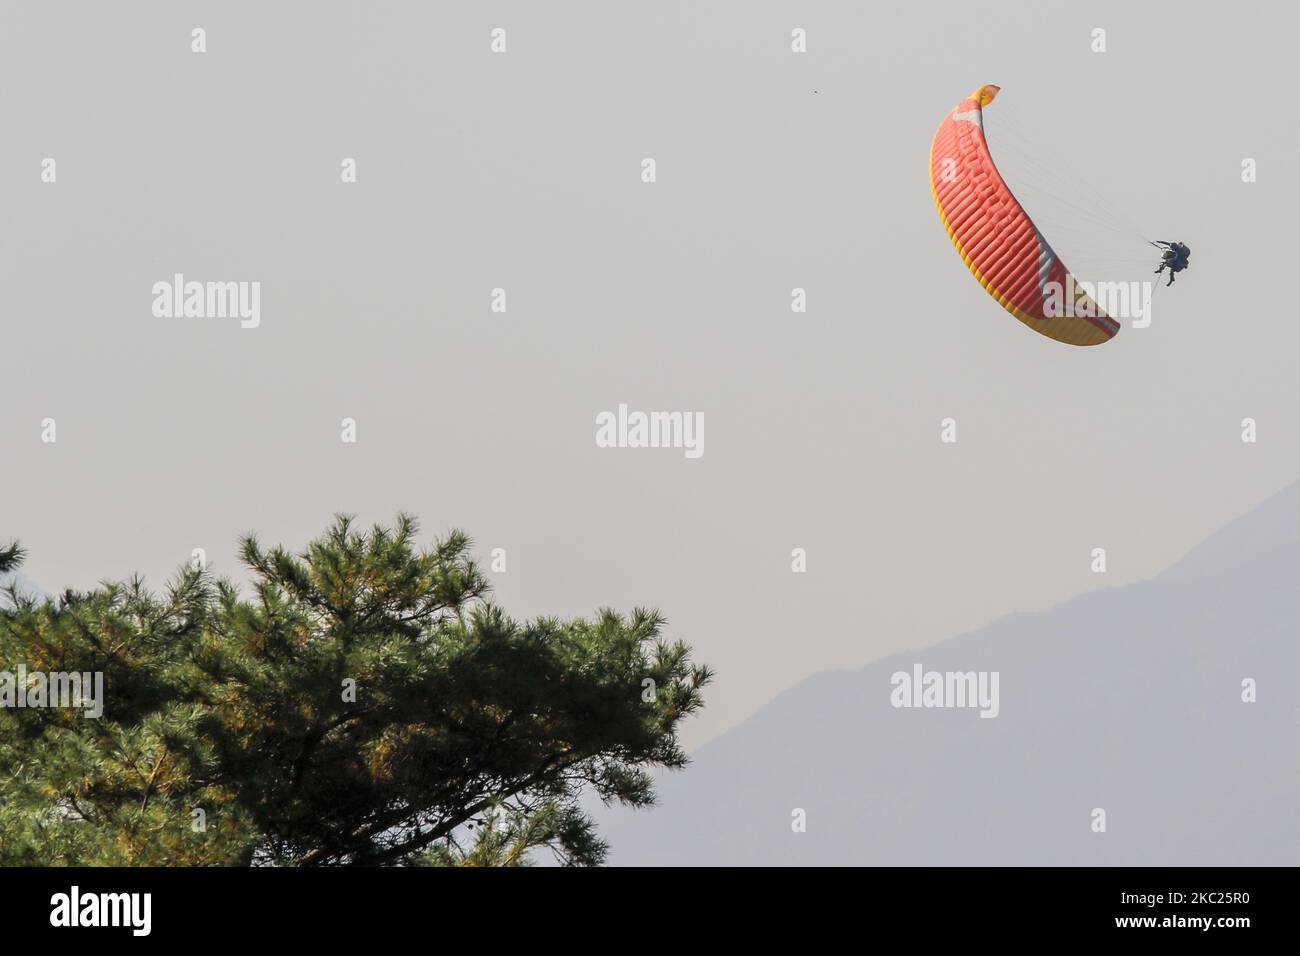 Paragliding Pilotflug am Herbsthimmel in Danyang, Südkorea, am 19. Oktober 2020. Die Temperaturen in Seoul fielen am Donnerstagmorgen auf 6,6 C, was das kälteste Wetter in diesem Herbst markiert, teilte der nationale Wetterdienst mit. (Foto von Seung-il Ryu/NurPhoto) Stockfoto